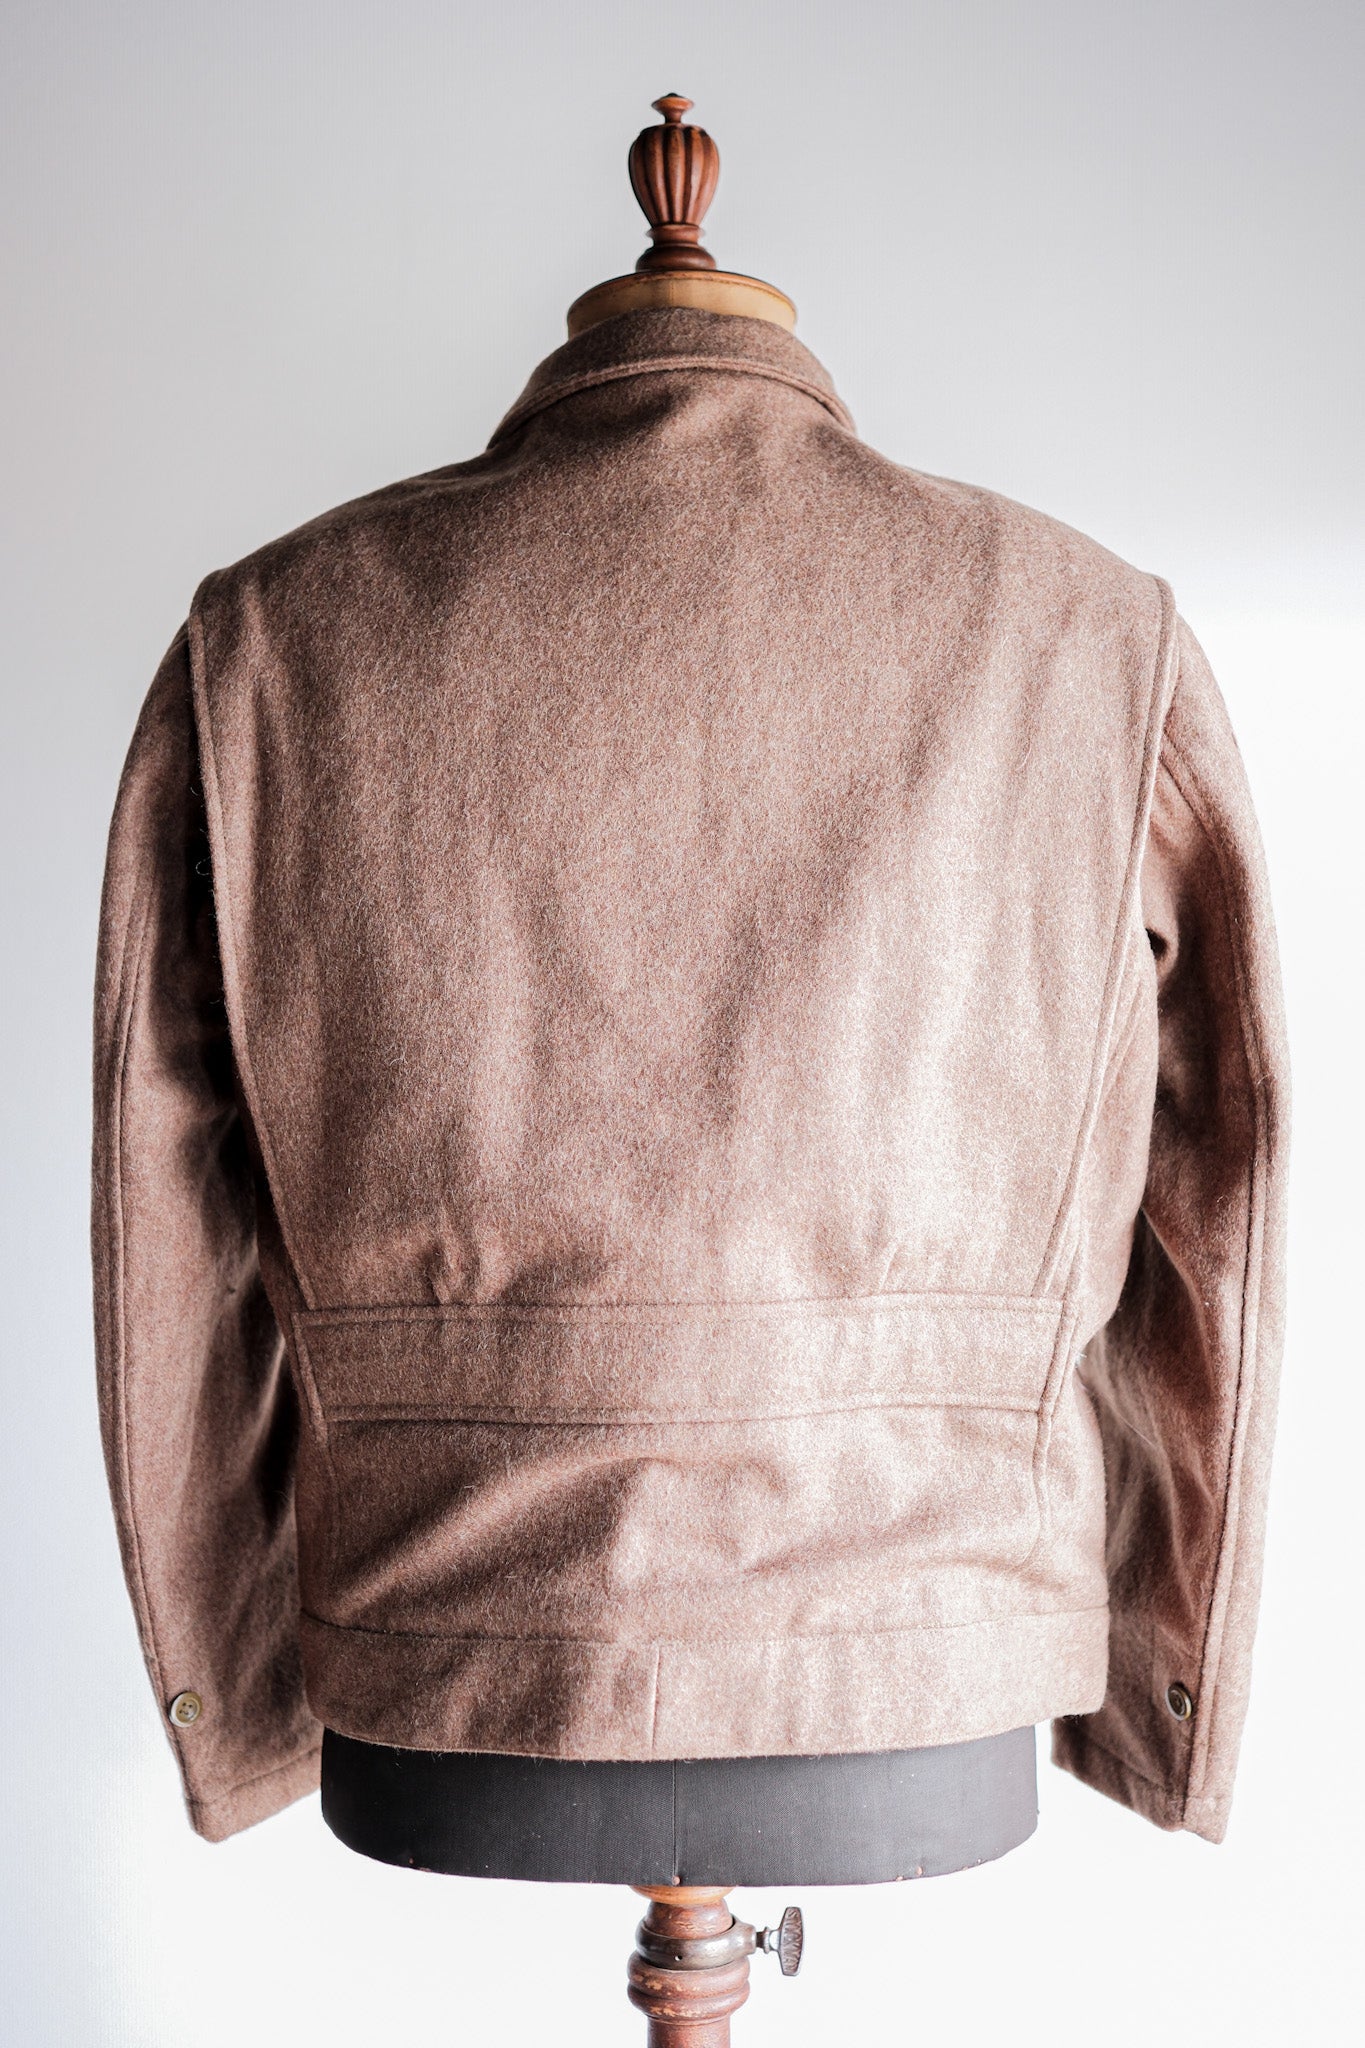 [〜50年代]法國陸軍羊毛夾克，帶下巴帶尺寸。42“死庫存”